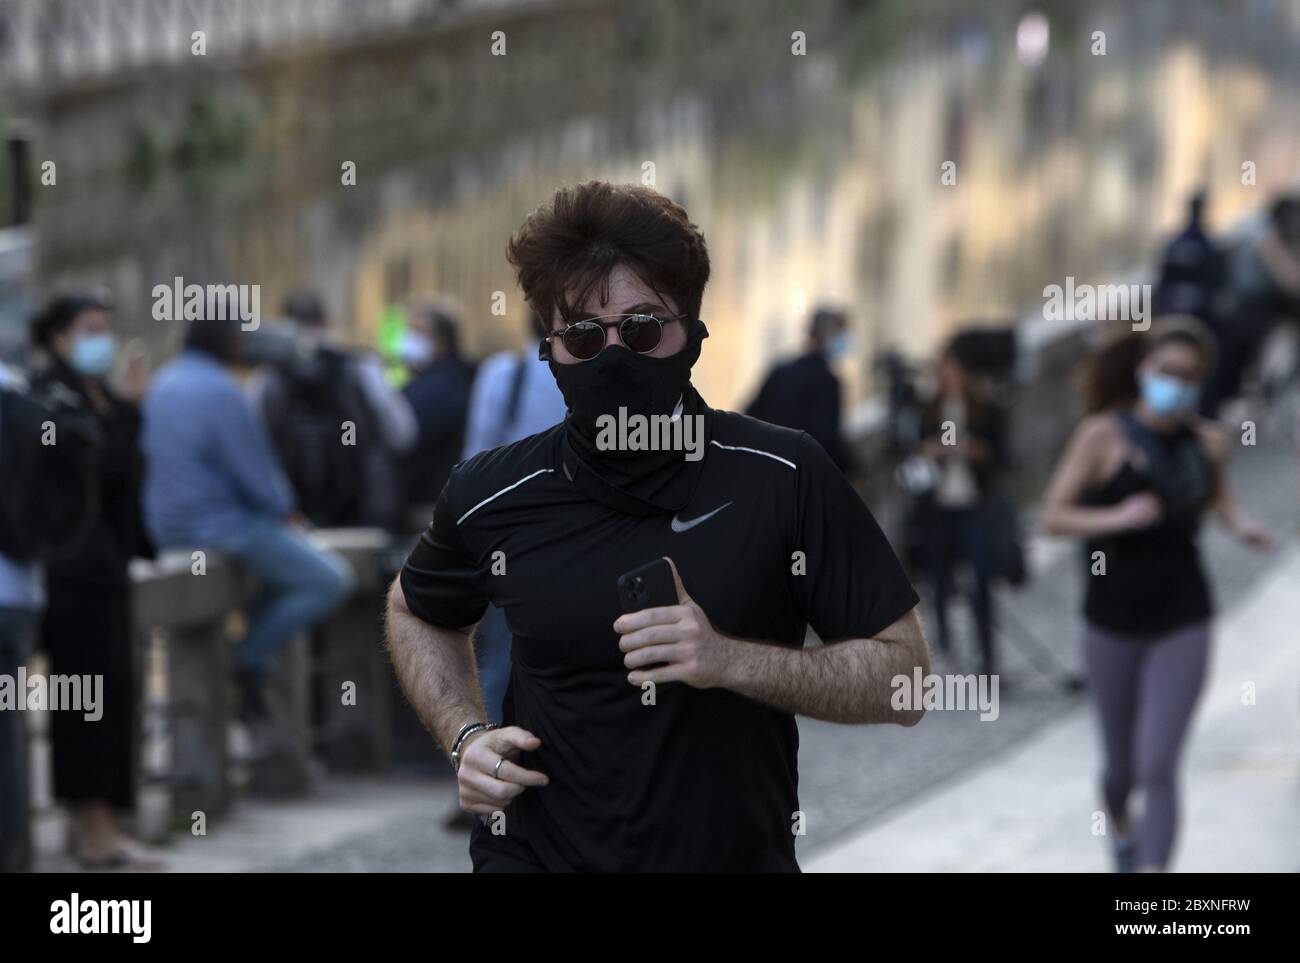 Persone che si fa jogging indossando la maschera durante l'emergenza Covid-19, a Milano. Foto Stock